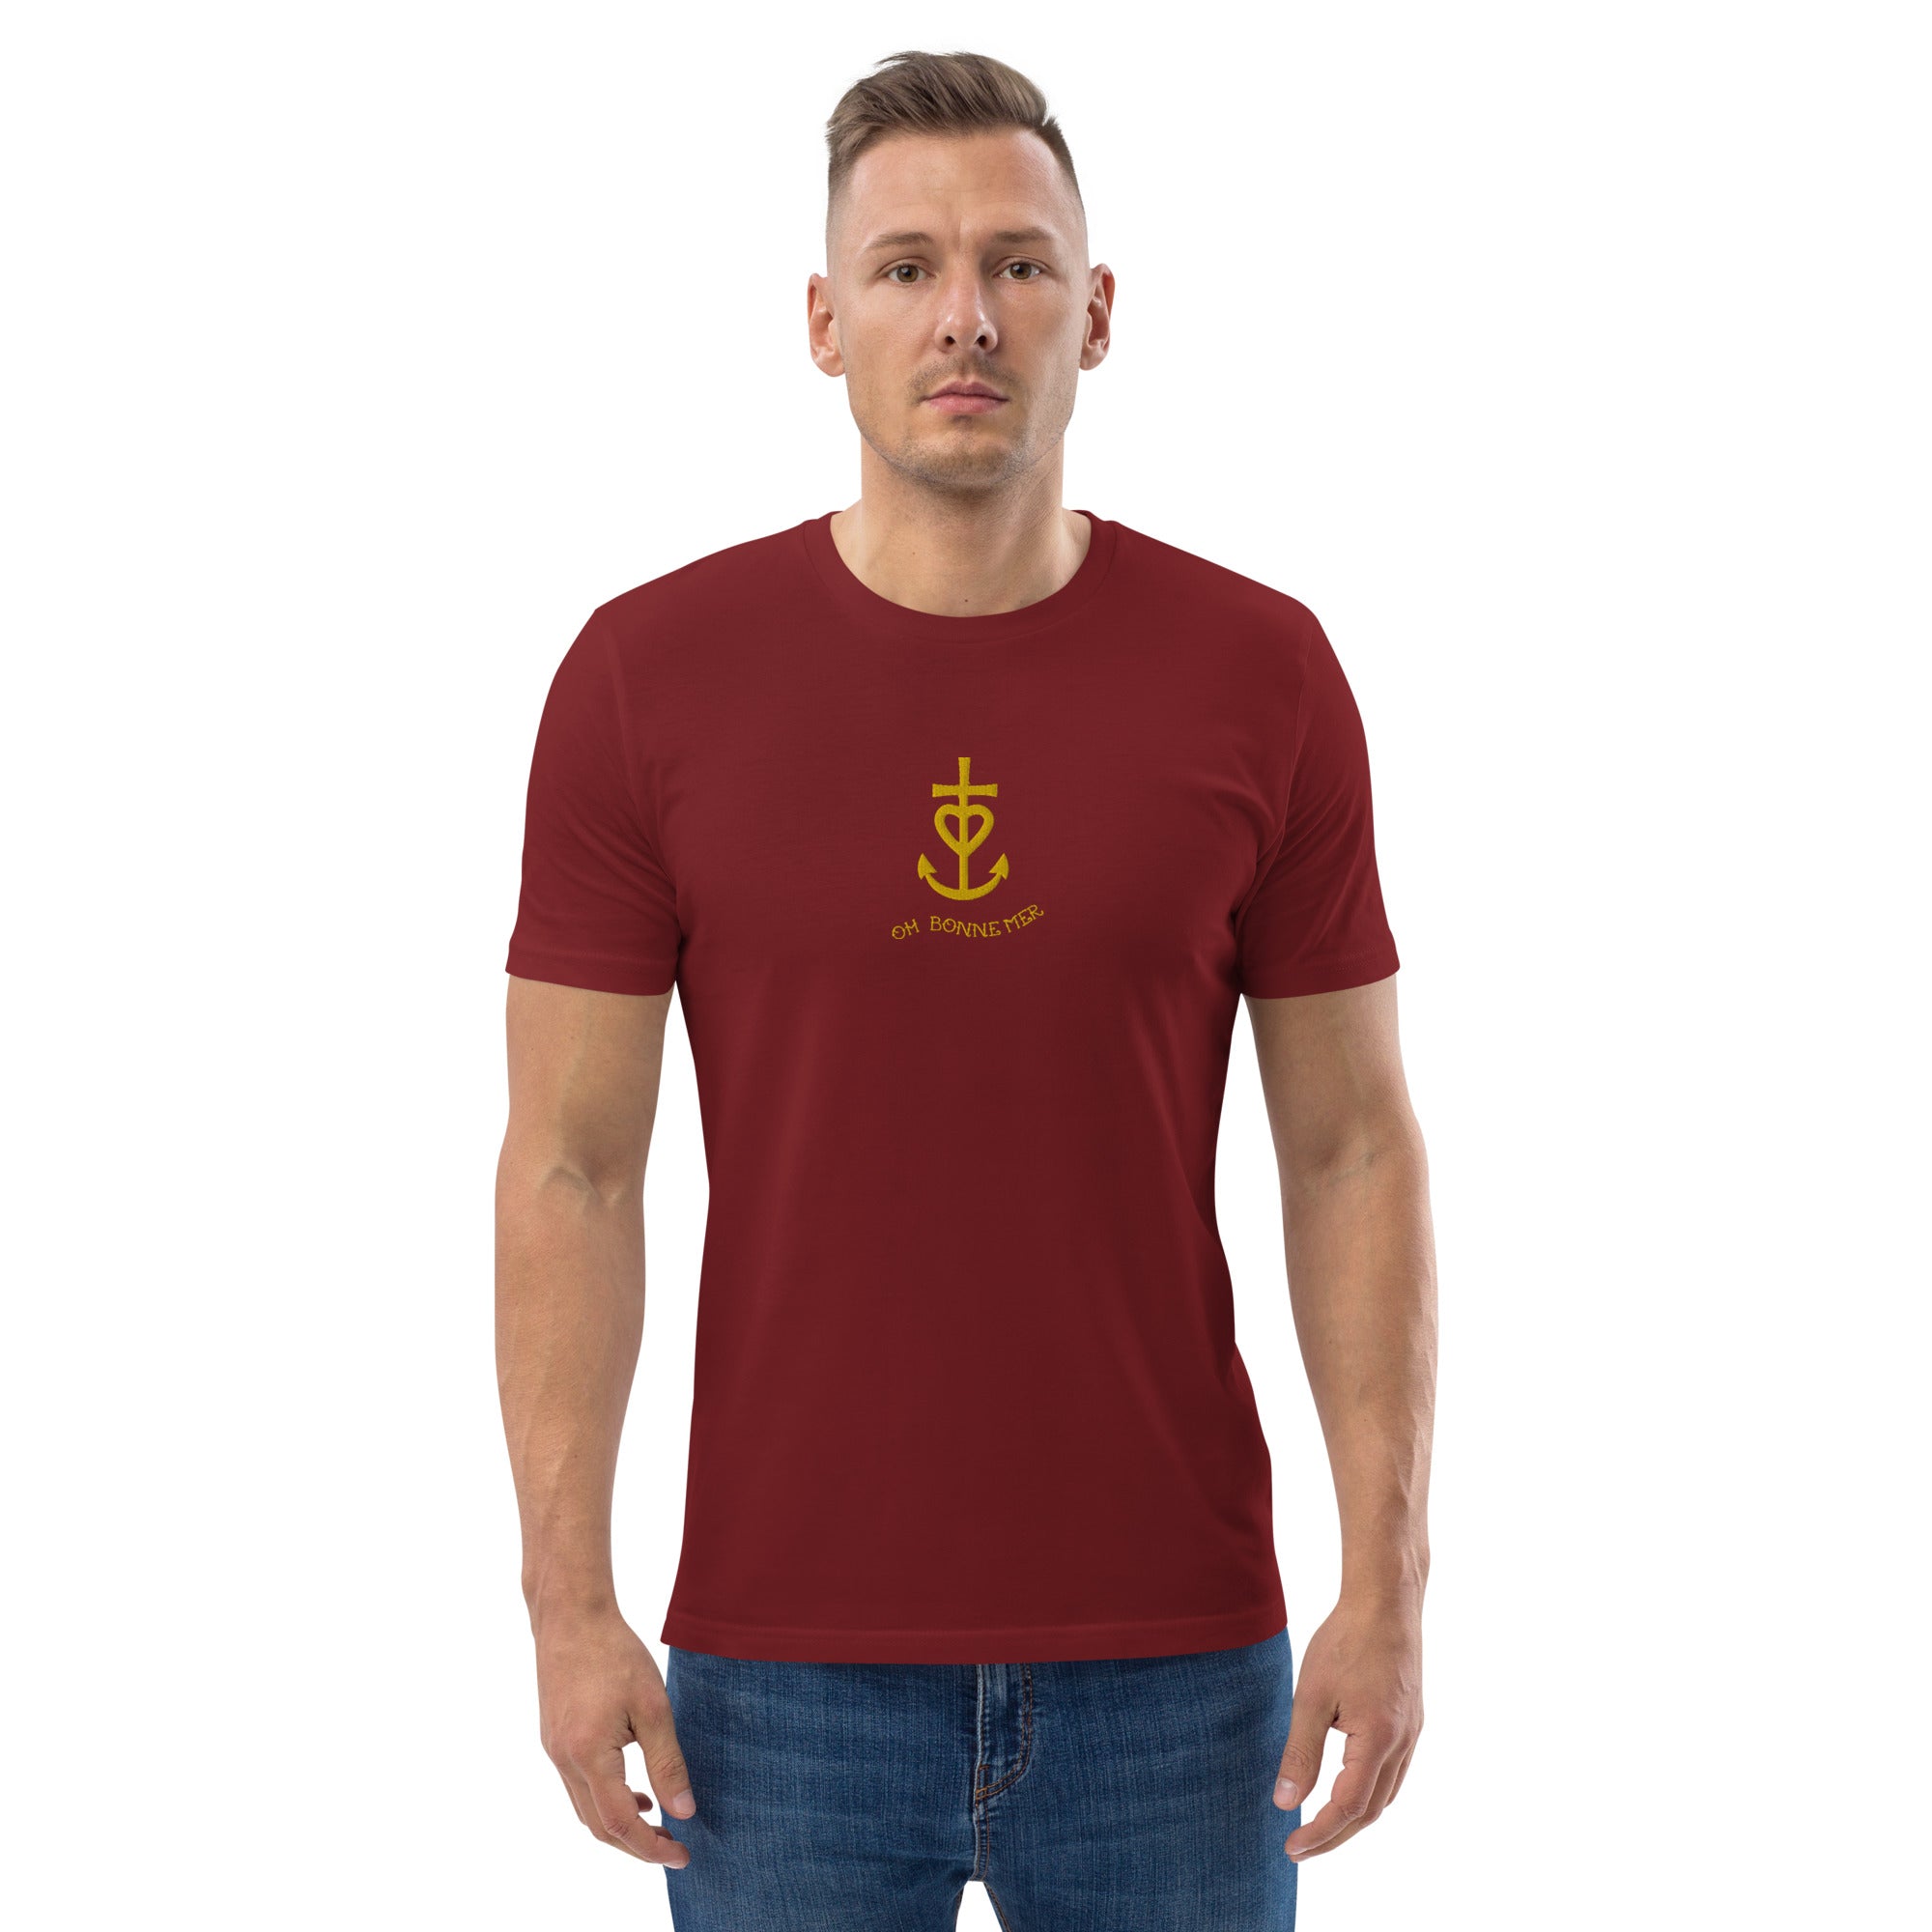 T-shirt unisexe en coton biologique Croix de Camargue dorée Oh Bonne mer brodé sur couleurs foncées